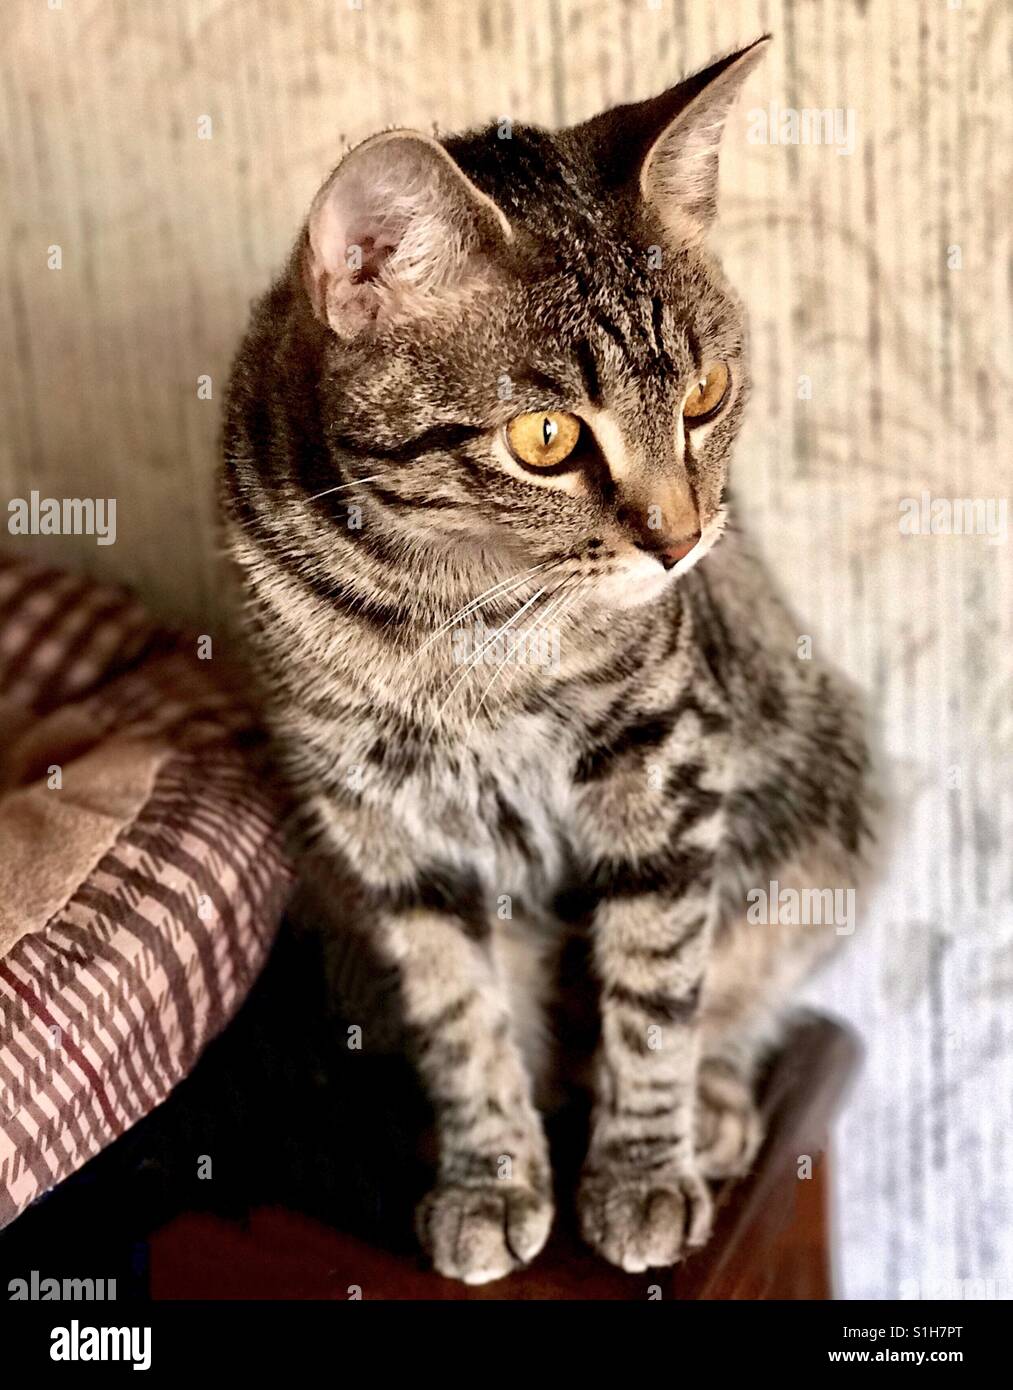 Porträt von dir schöne in- oder American Shorthair Tabby Katze Teenager Kätzchen mit wunderschönen goldenen Augen und prominente Streifen Stockfoto